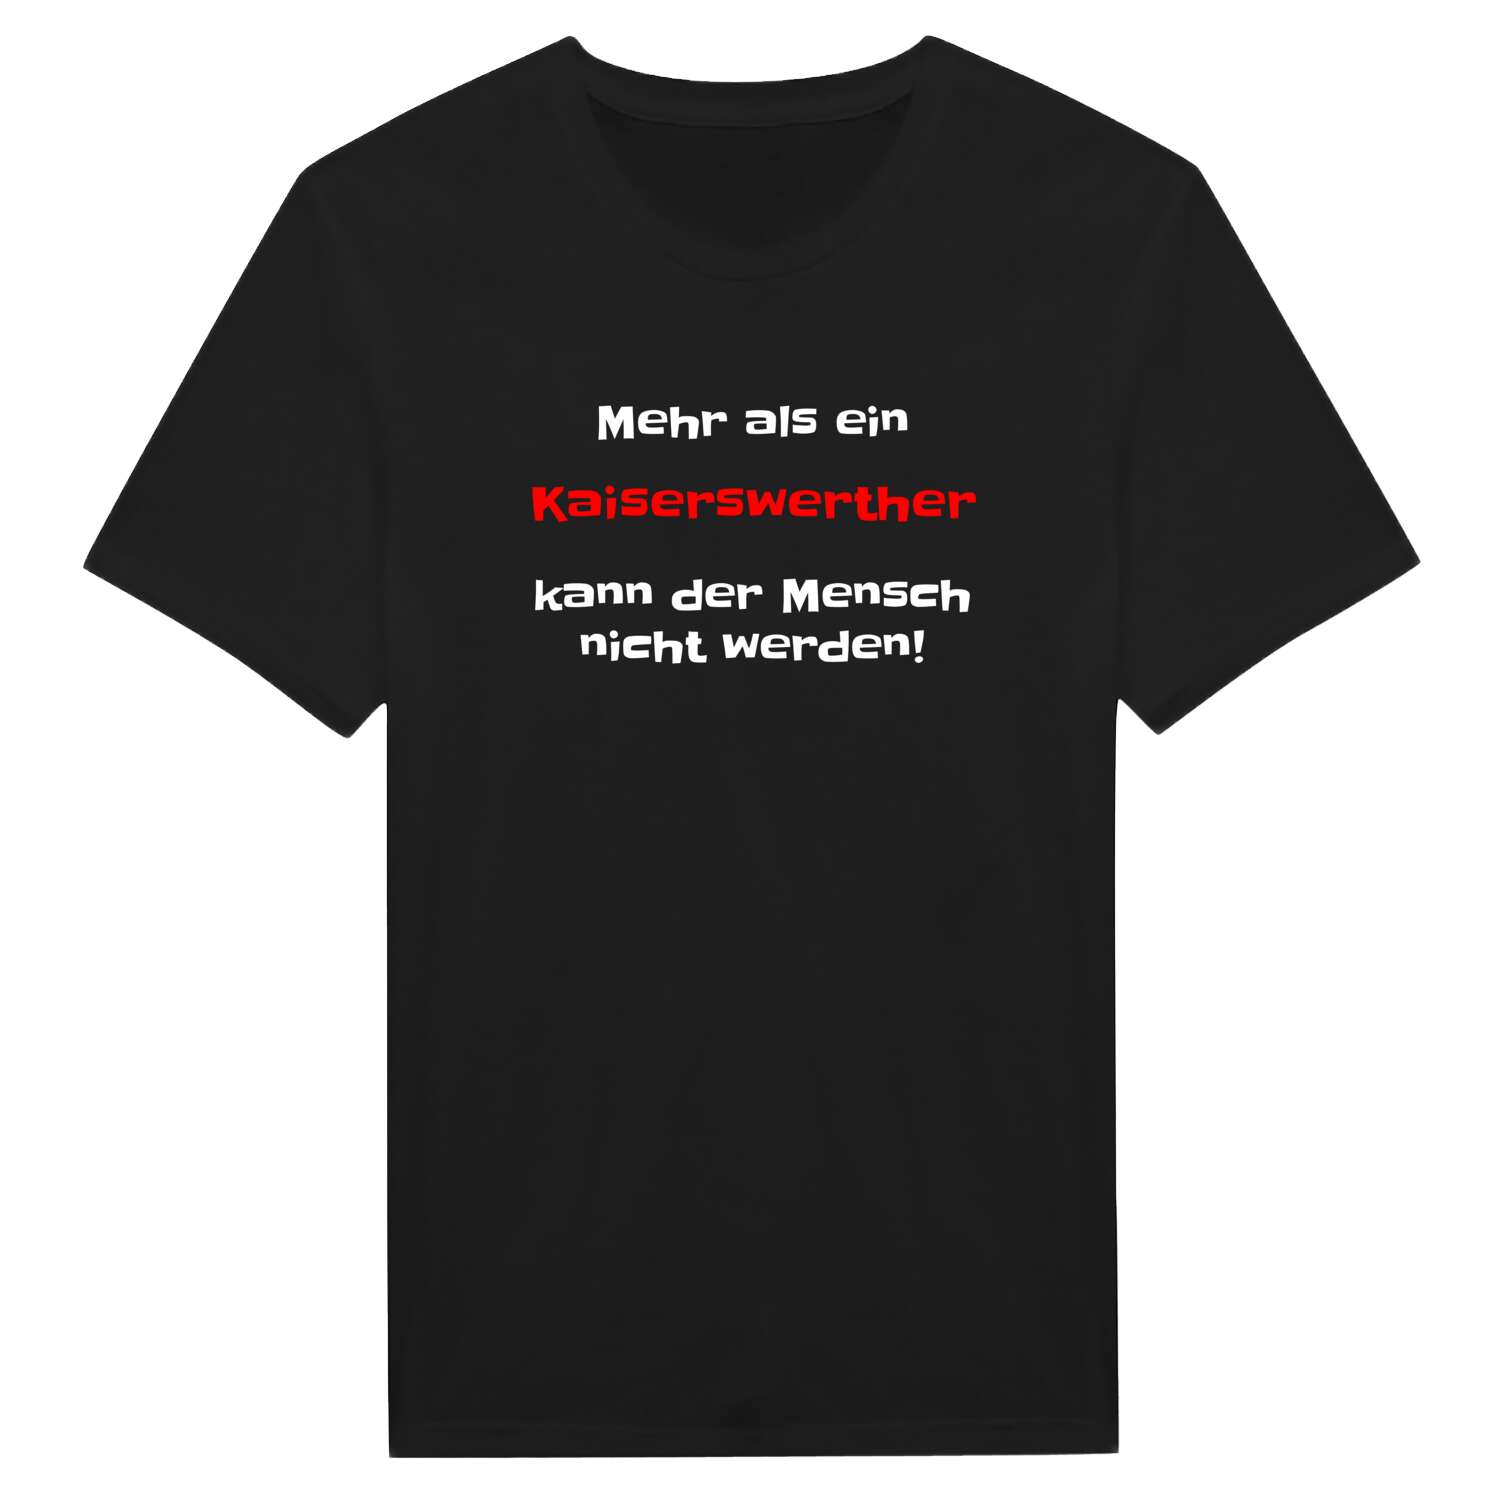 Kaiserswerth T-Shirt »Mehr als ein«